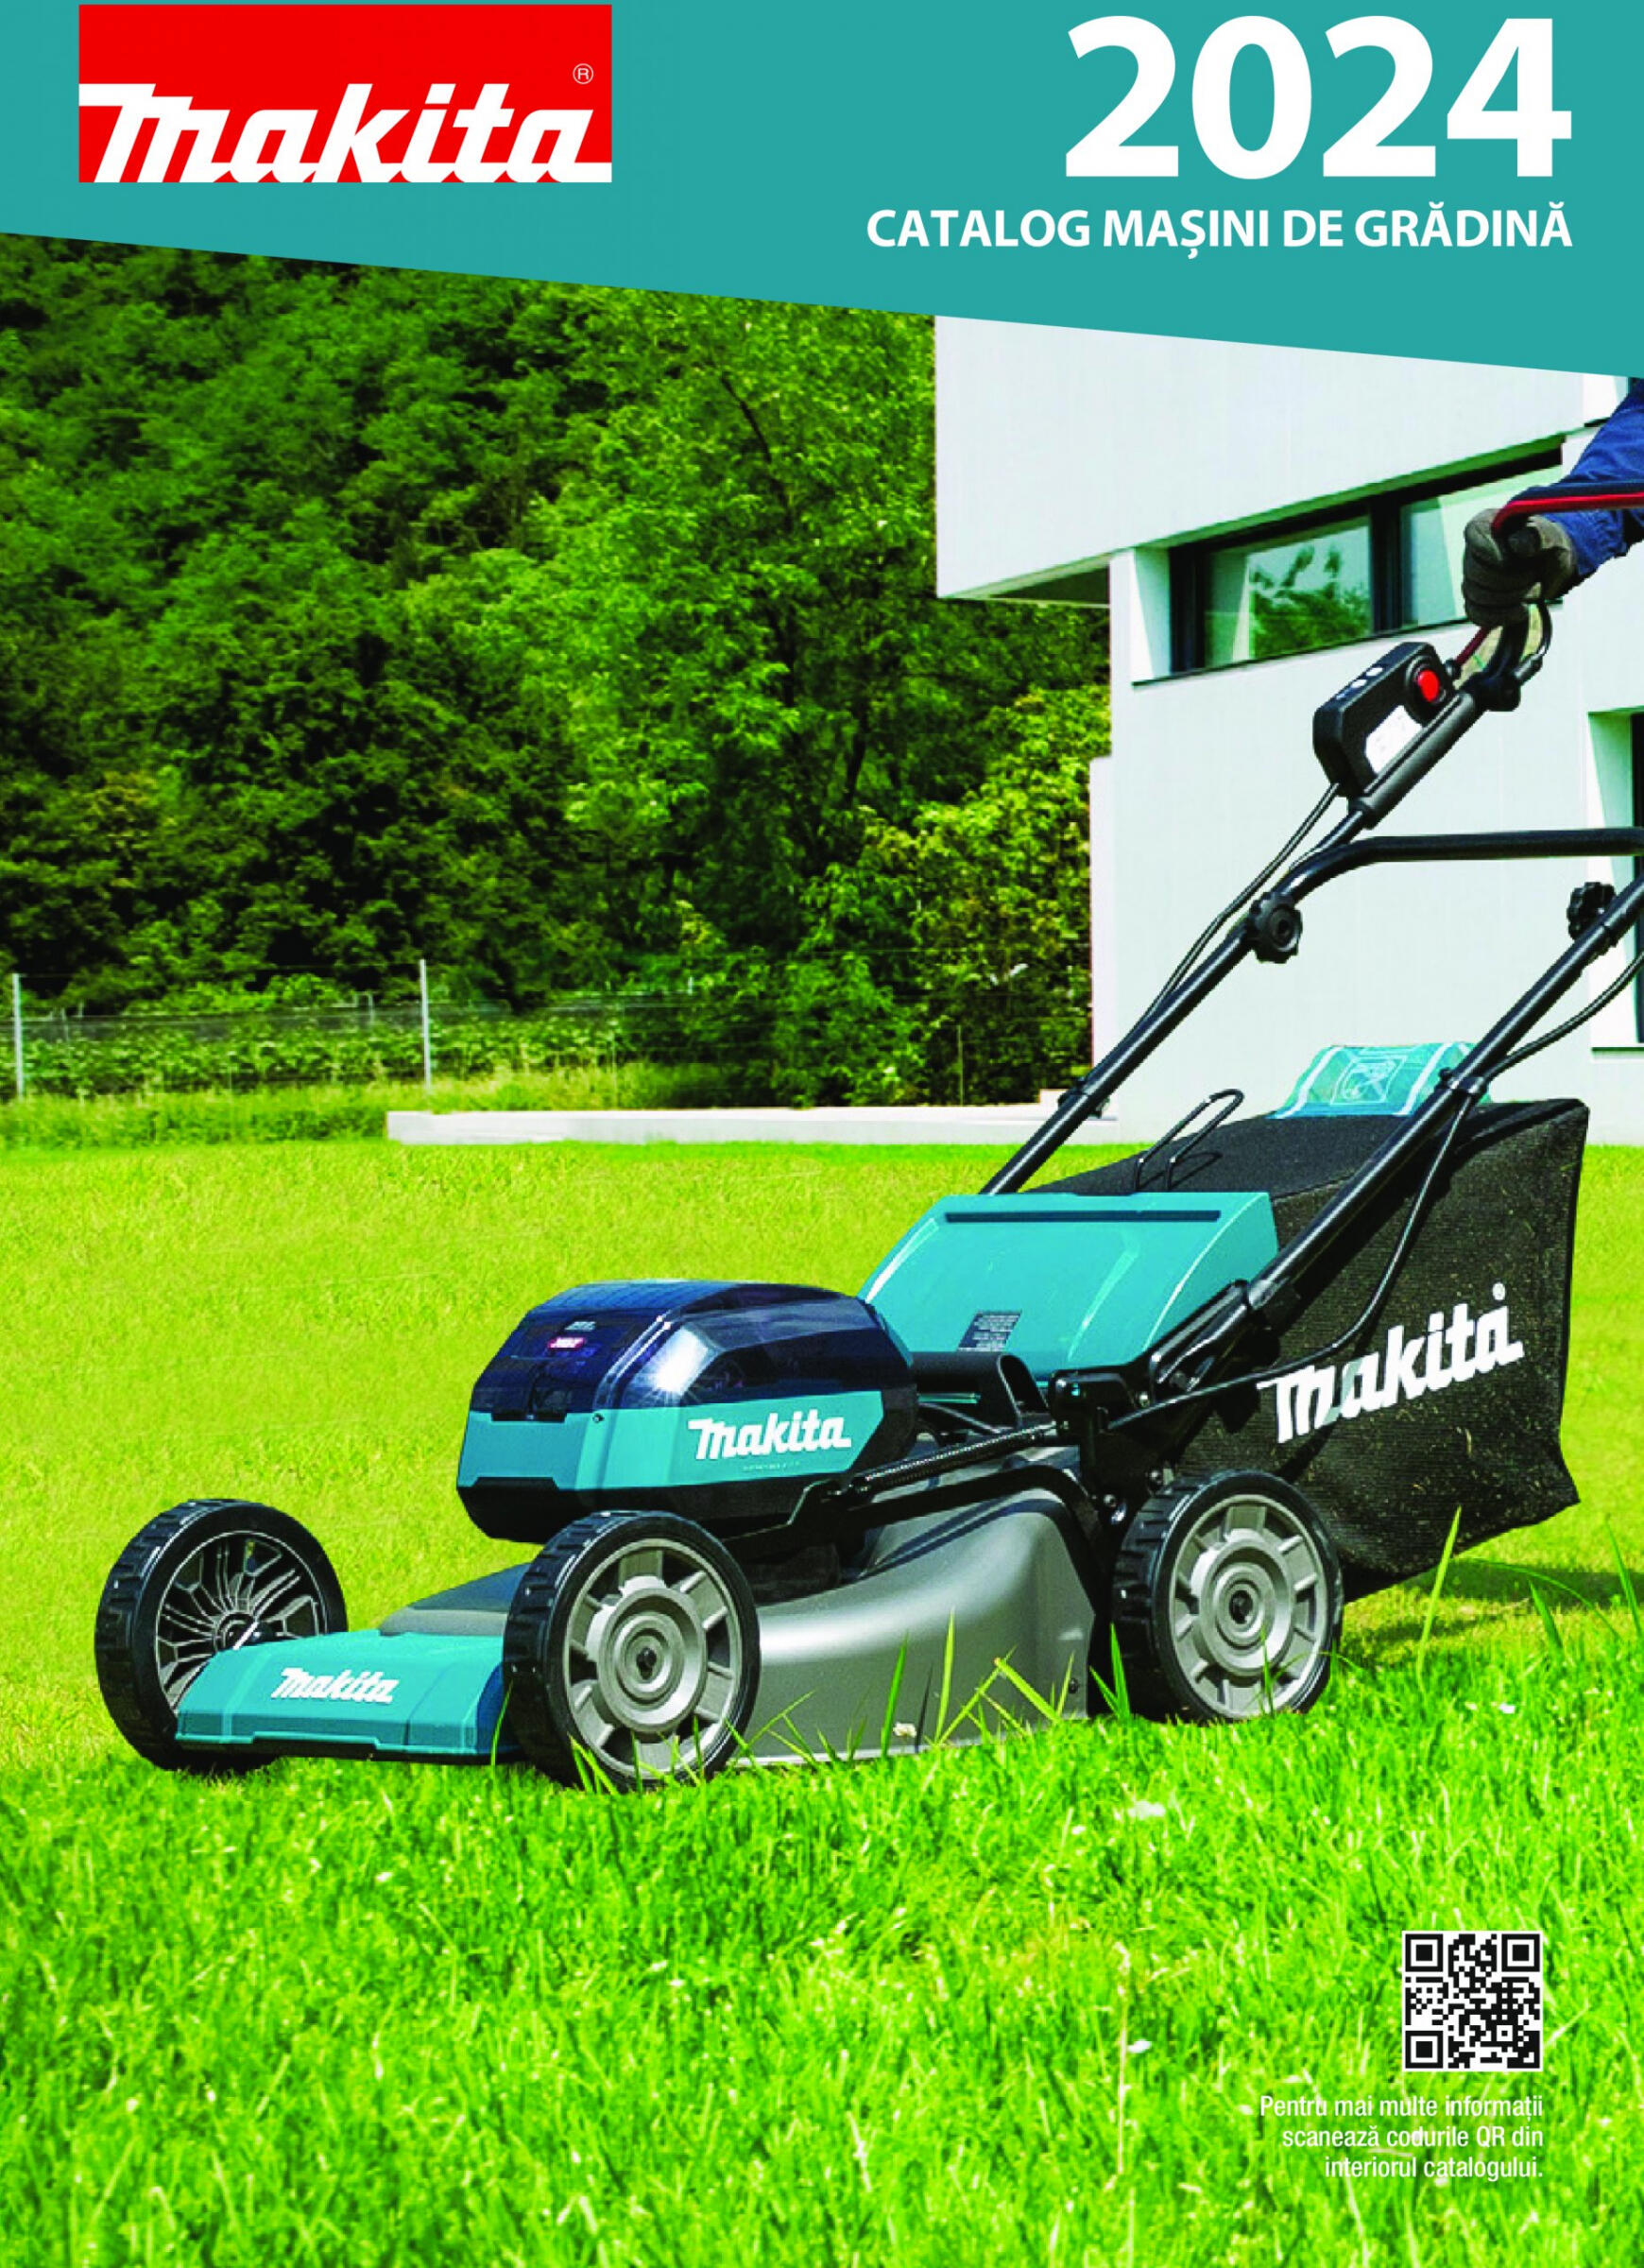 makita - Makita - Catalog Mașini de Grădină 2024 valabil de 07.02.2024 - page: 1